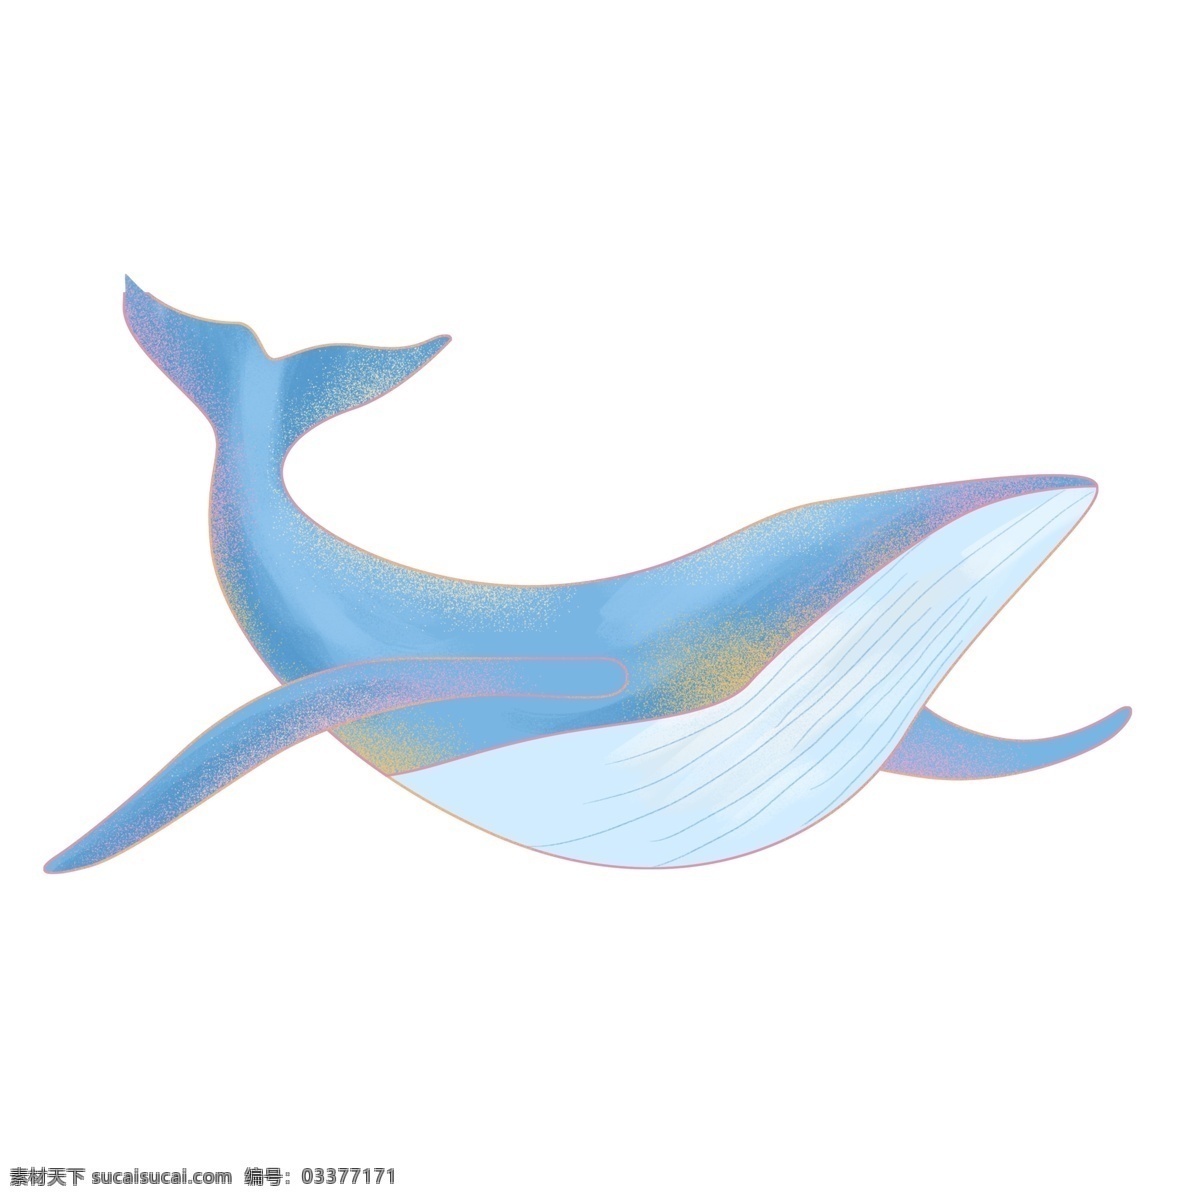 蓝色 唯美 鲸鱼 手绘 小清新 动物 插画 卡通元素